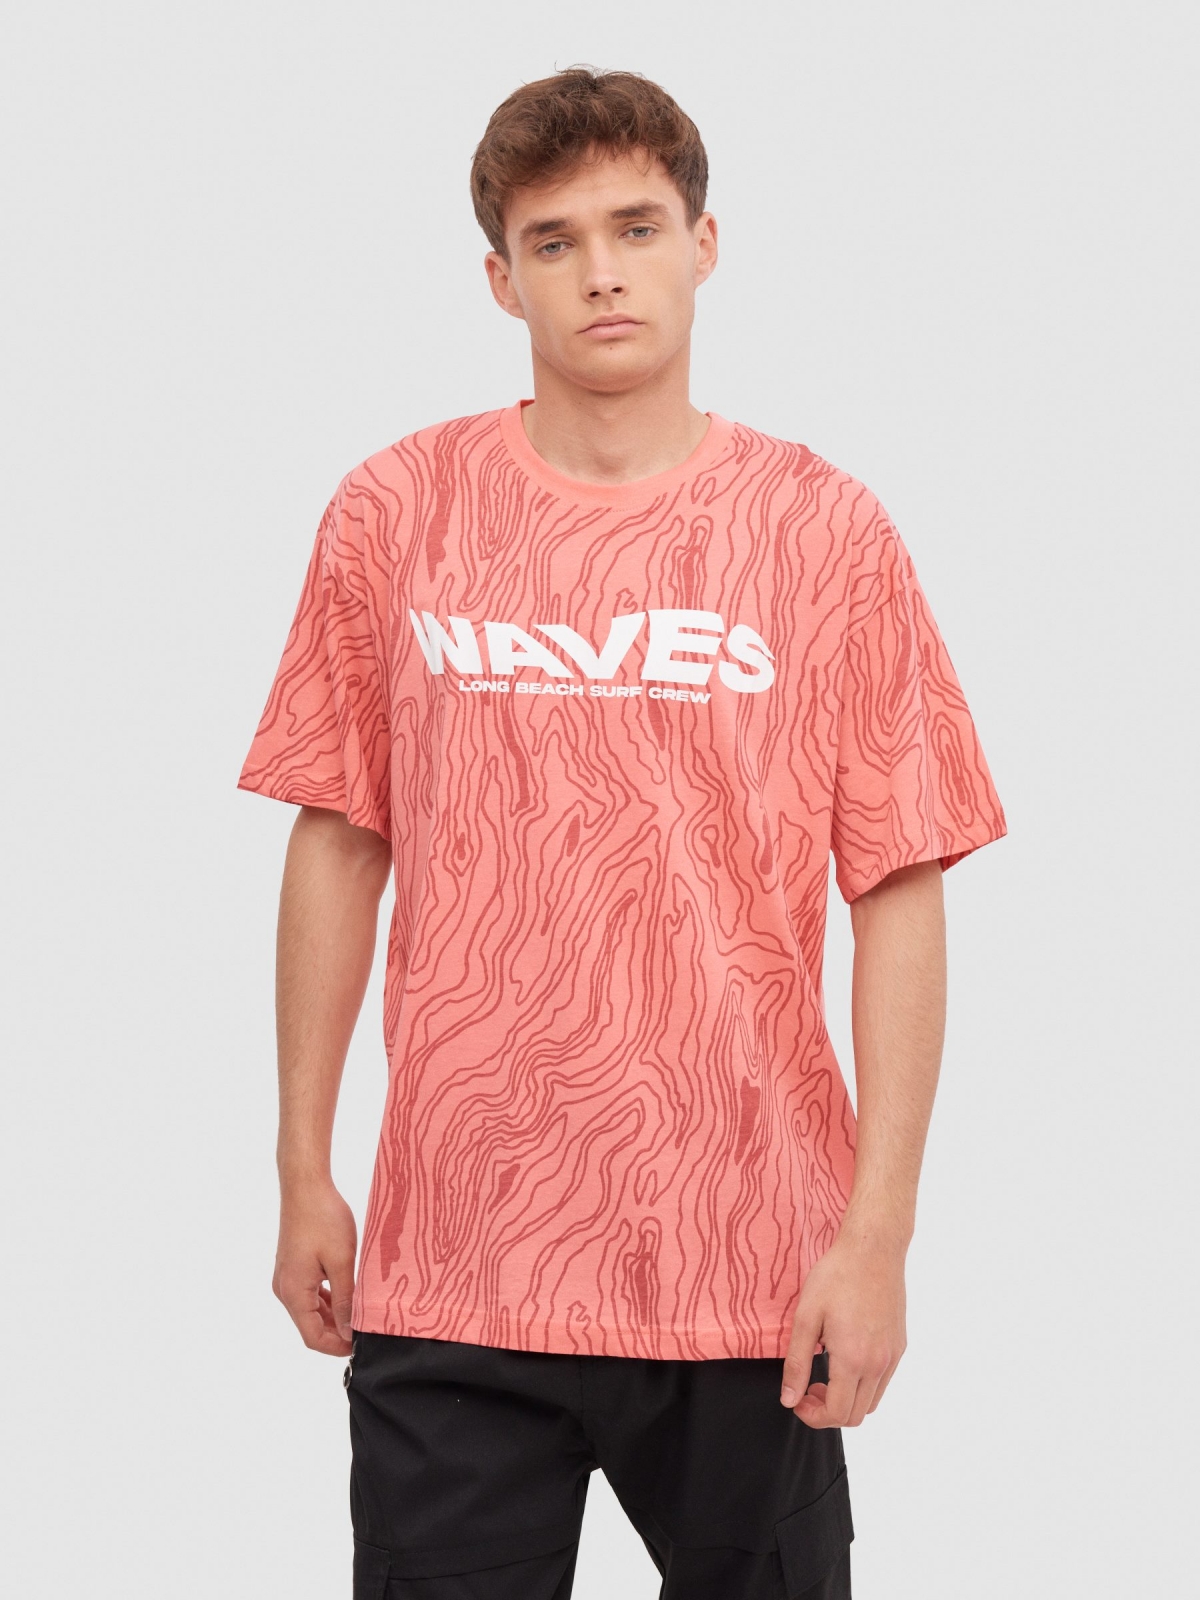 Camiseta allover waves rosa vista media frontal